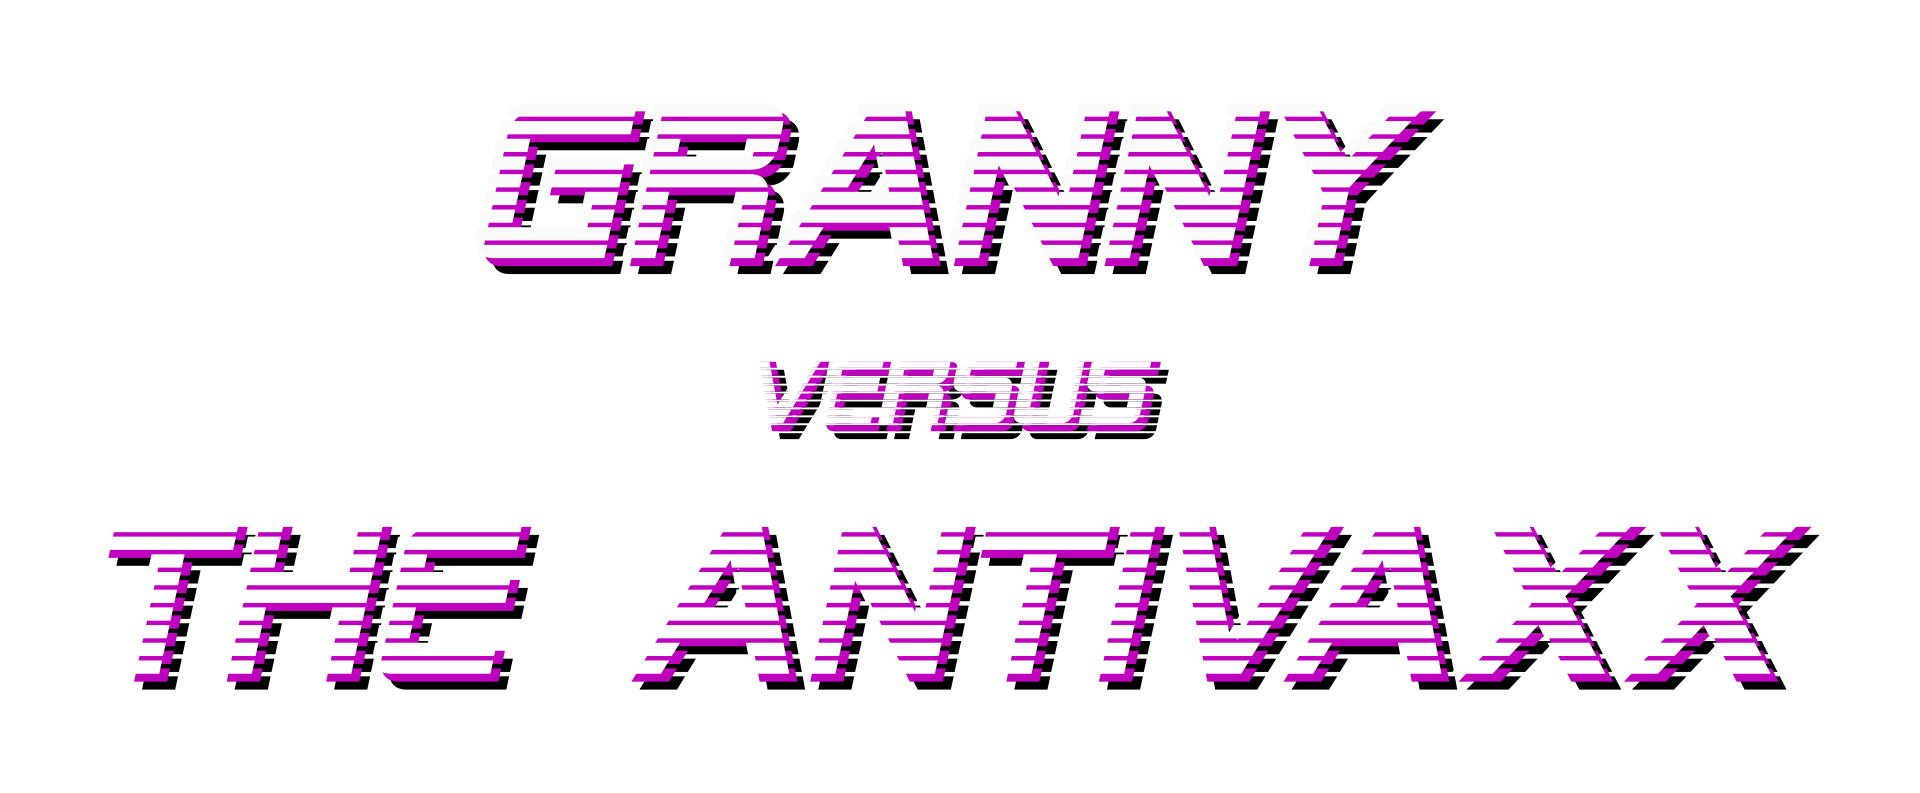 Granny versus the ANTI-VAXX